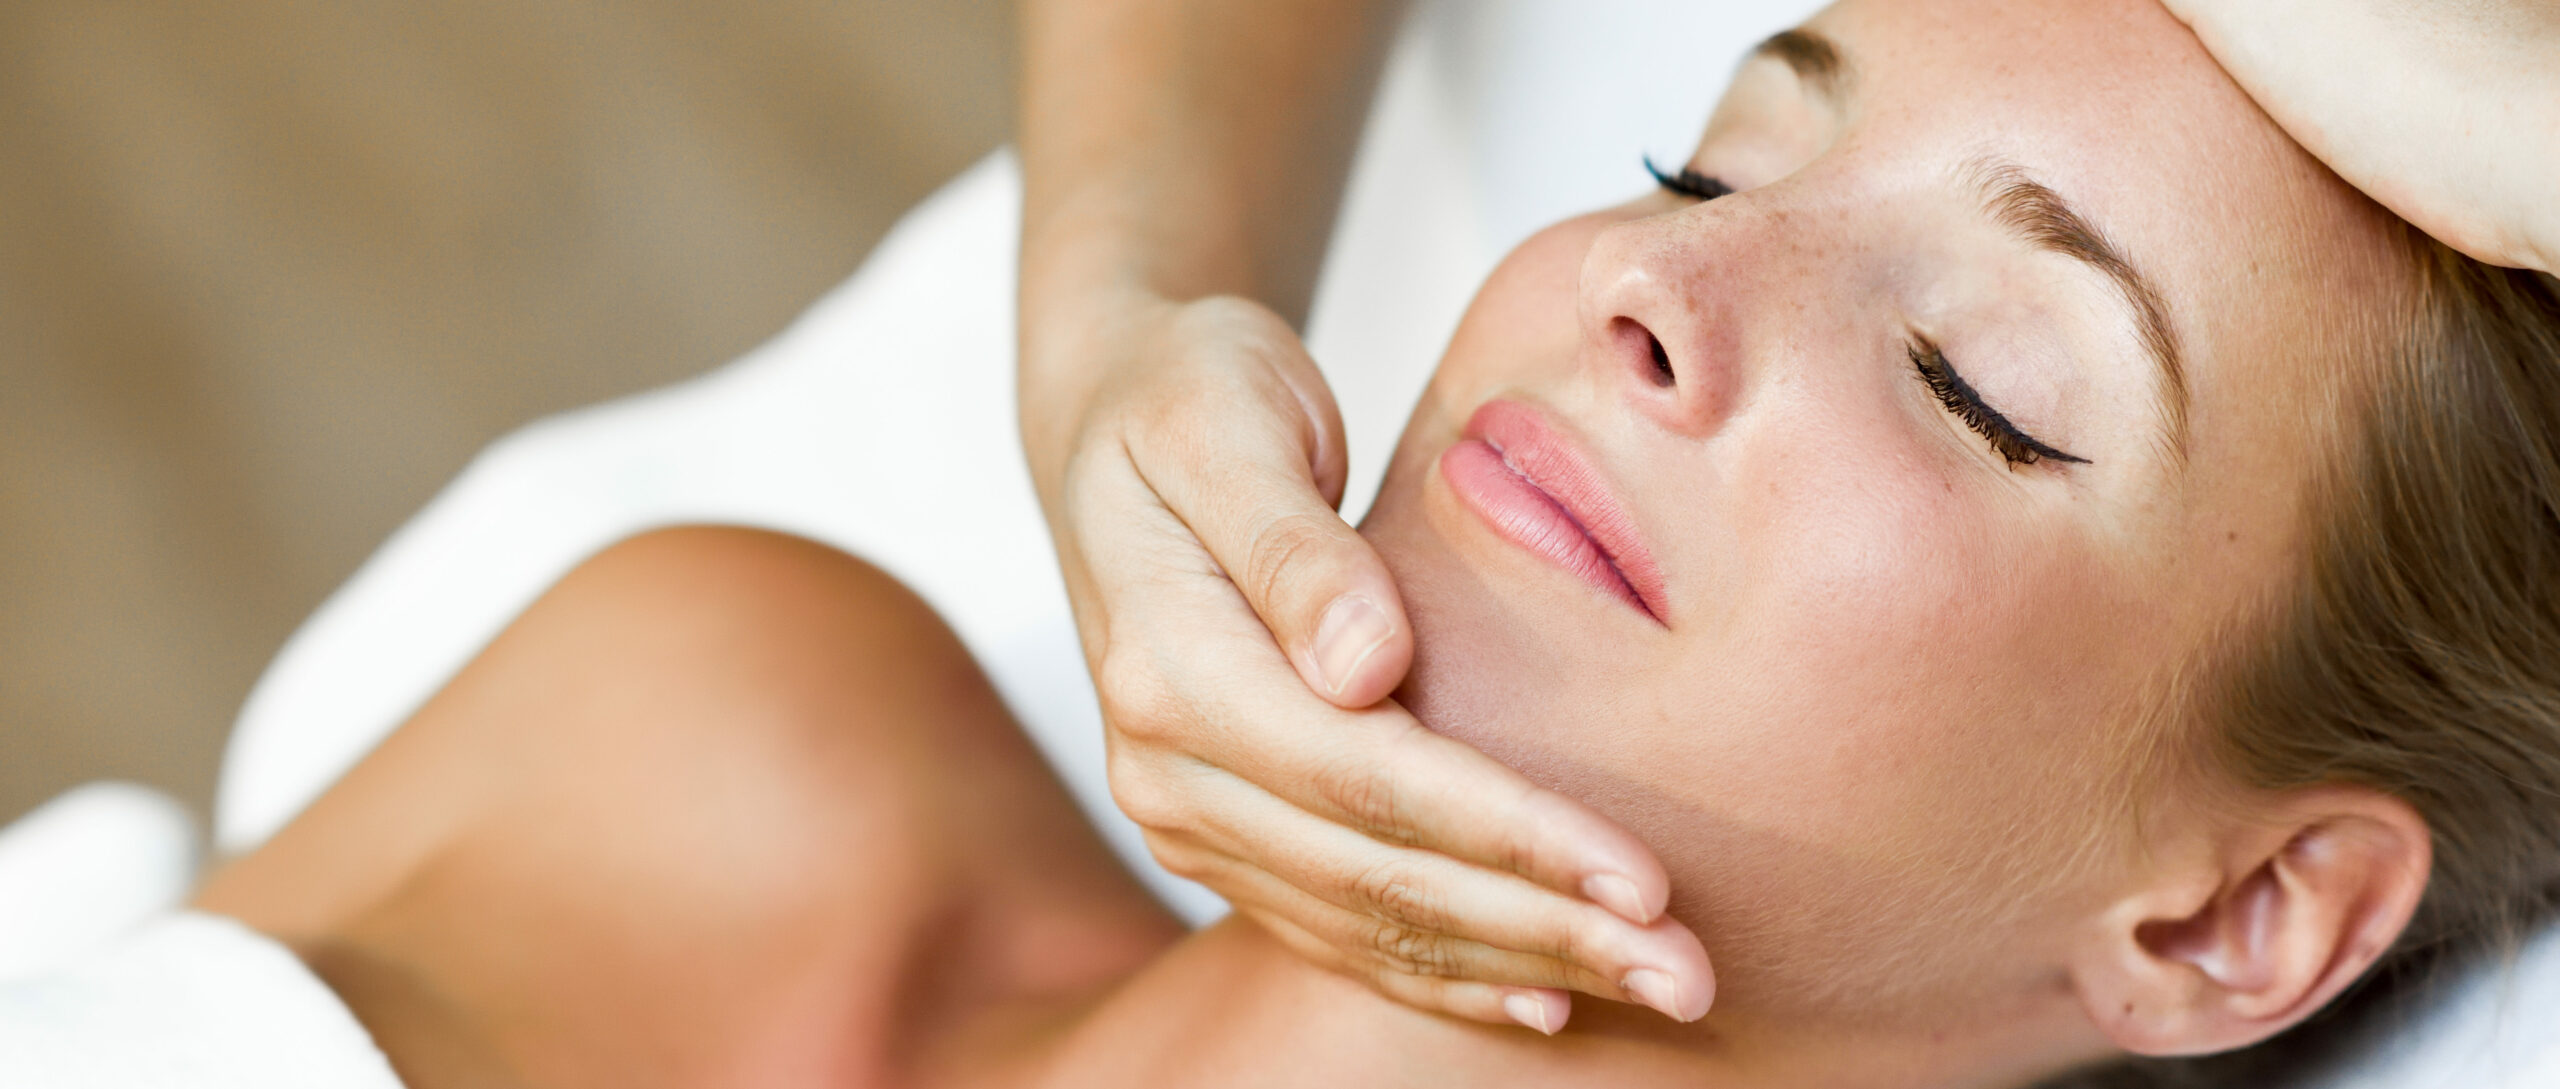 Mulher deitada, recebendo uma massagem no rosto